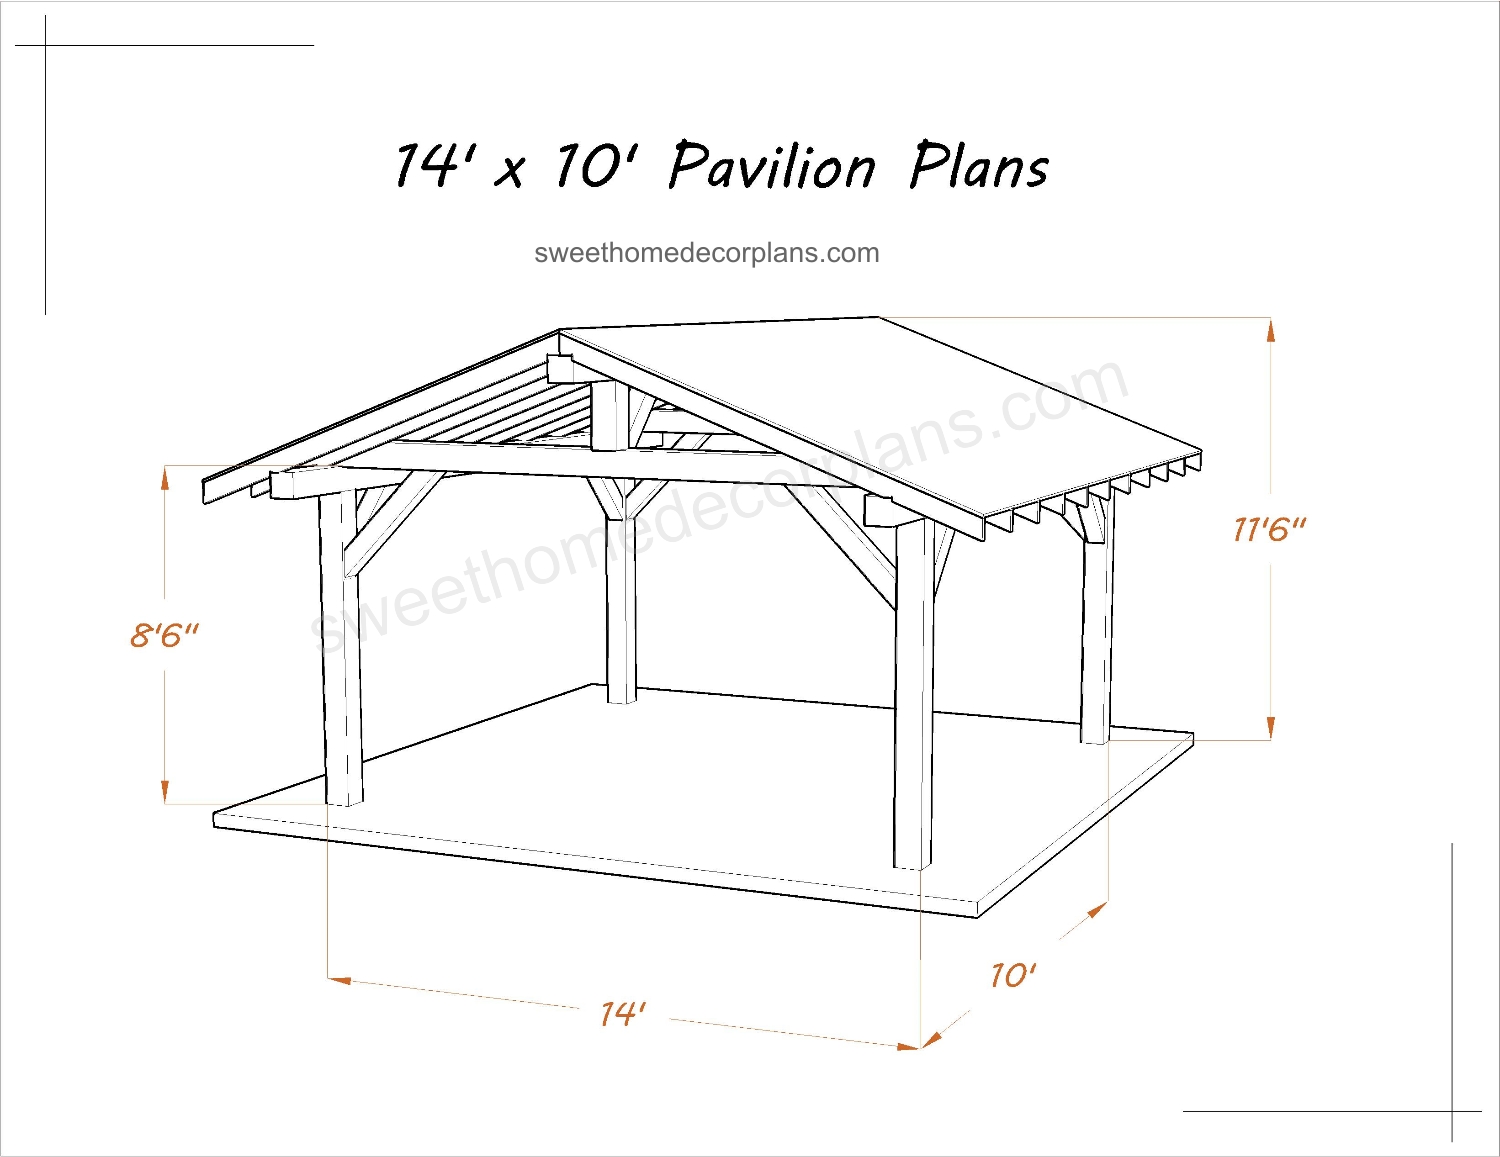 Wooden-Diy-14-x-10-gable-pavilion-plans-in-pdf